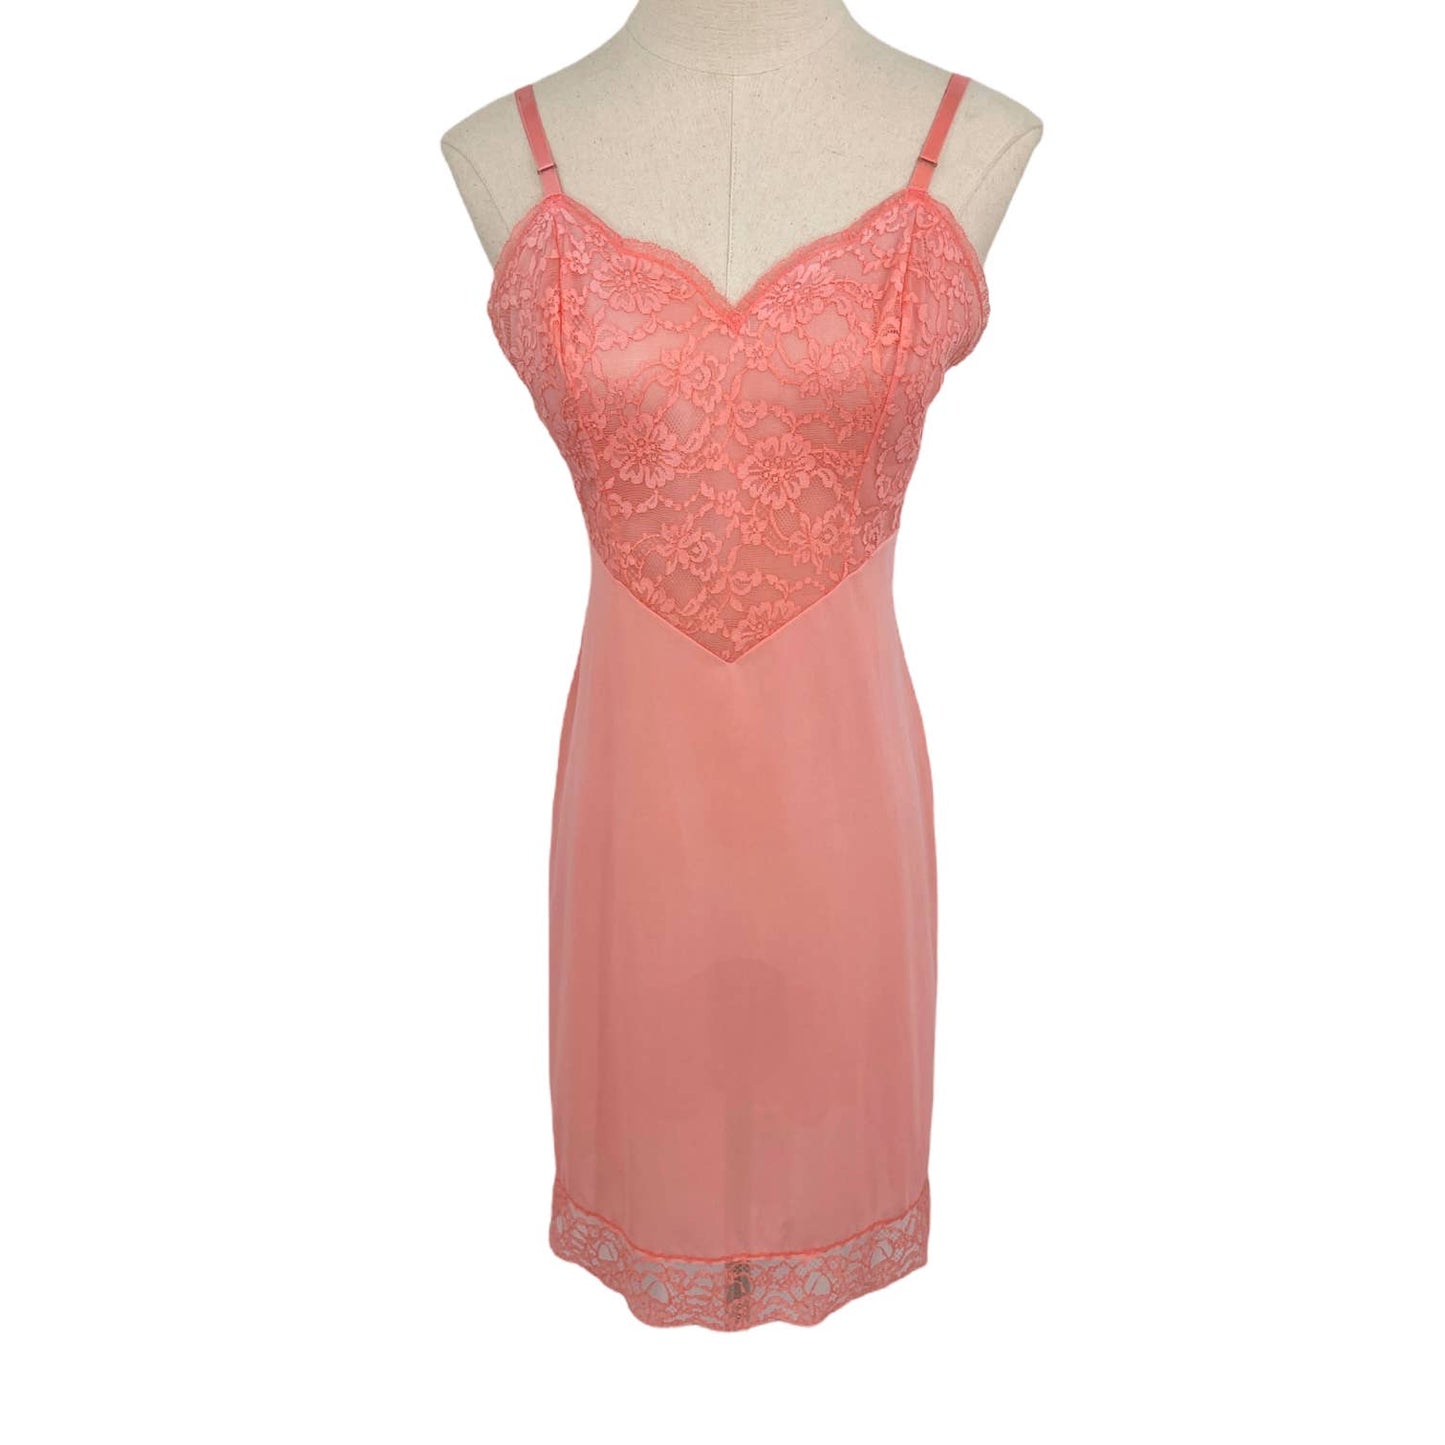 Vanity Fair Coral Lace Bust Slip Short Dress Style Lingerie 50s Vintage Size 32